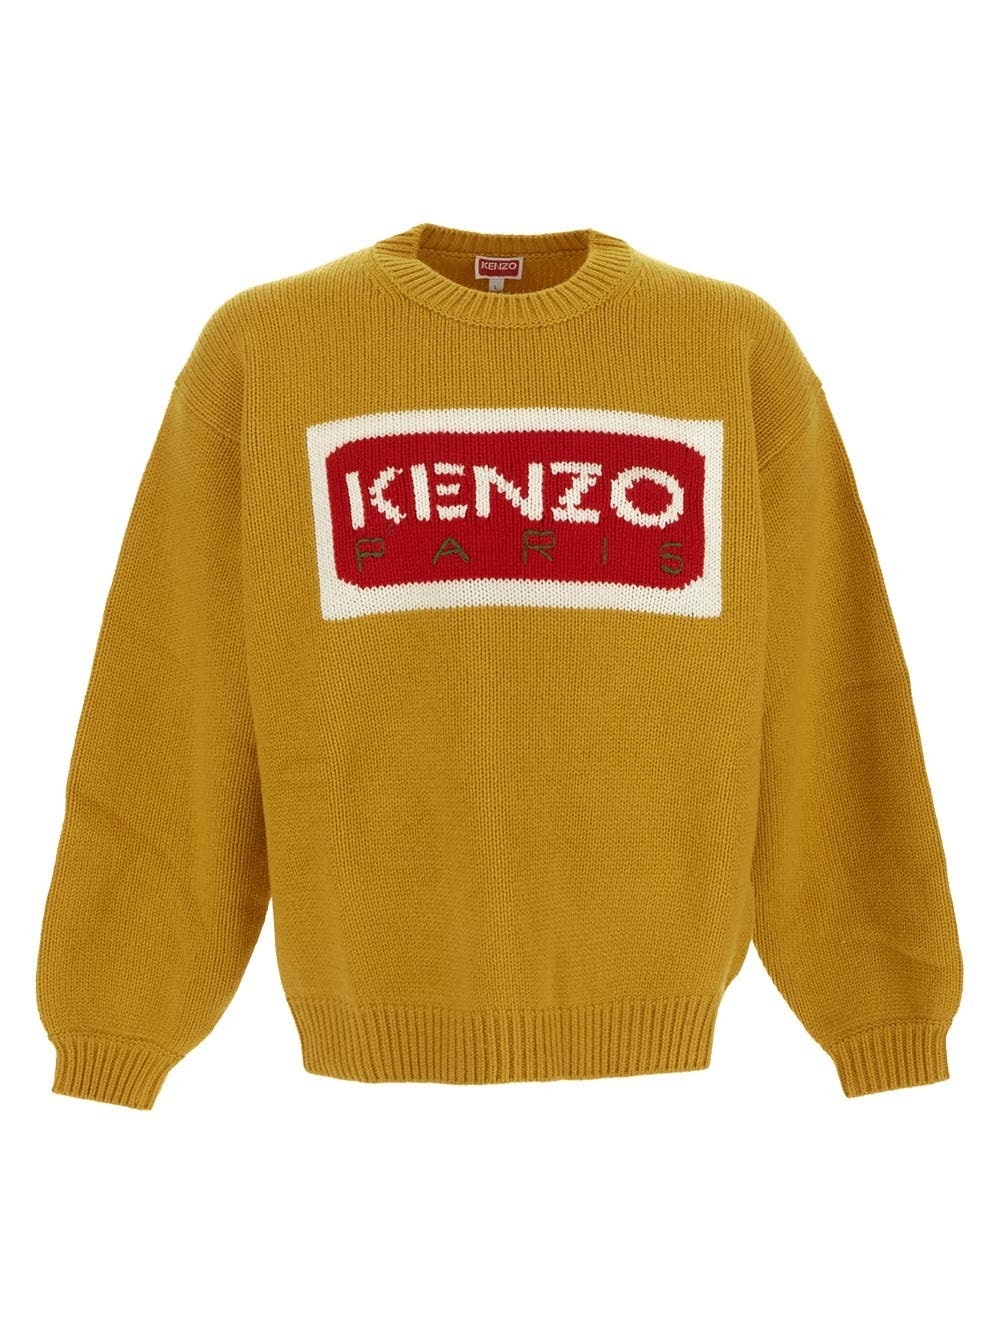 Photo: Kenzo Tricolor Knitwear